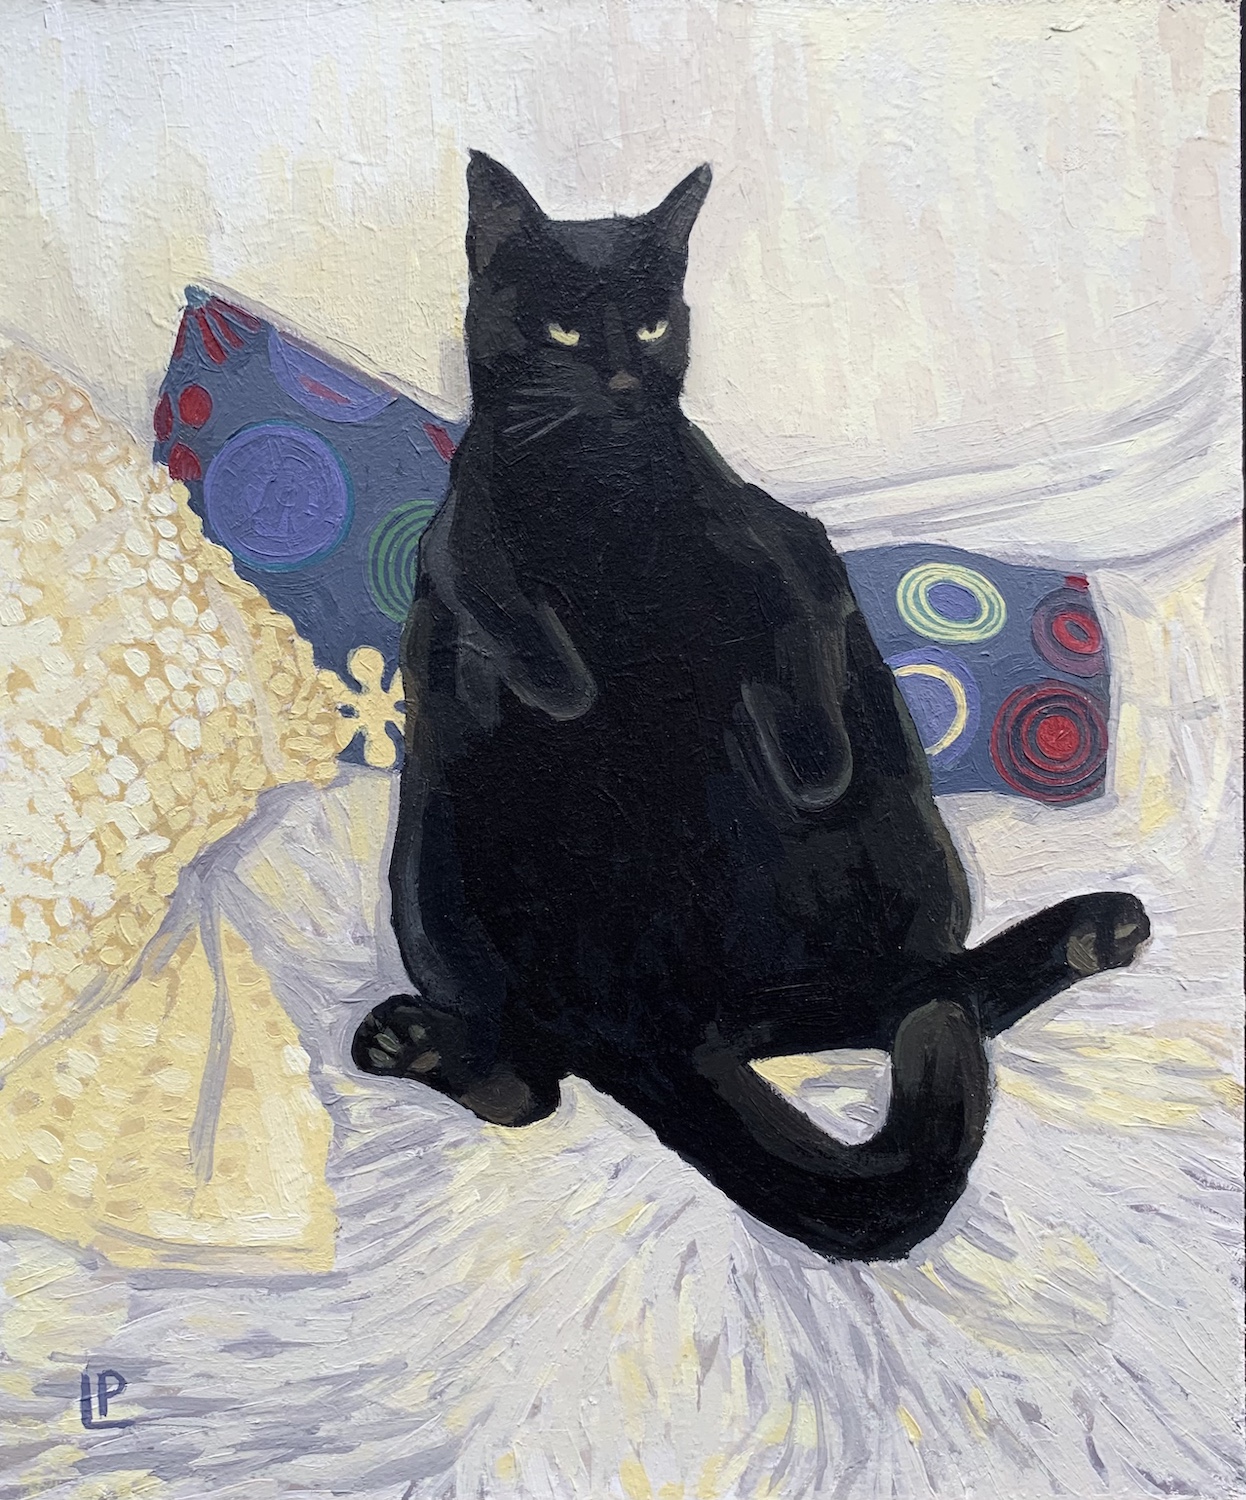 'Cane-yo Cat', Lisa Paston, Oil on board, 20 x 17 cm